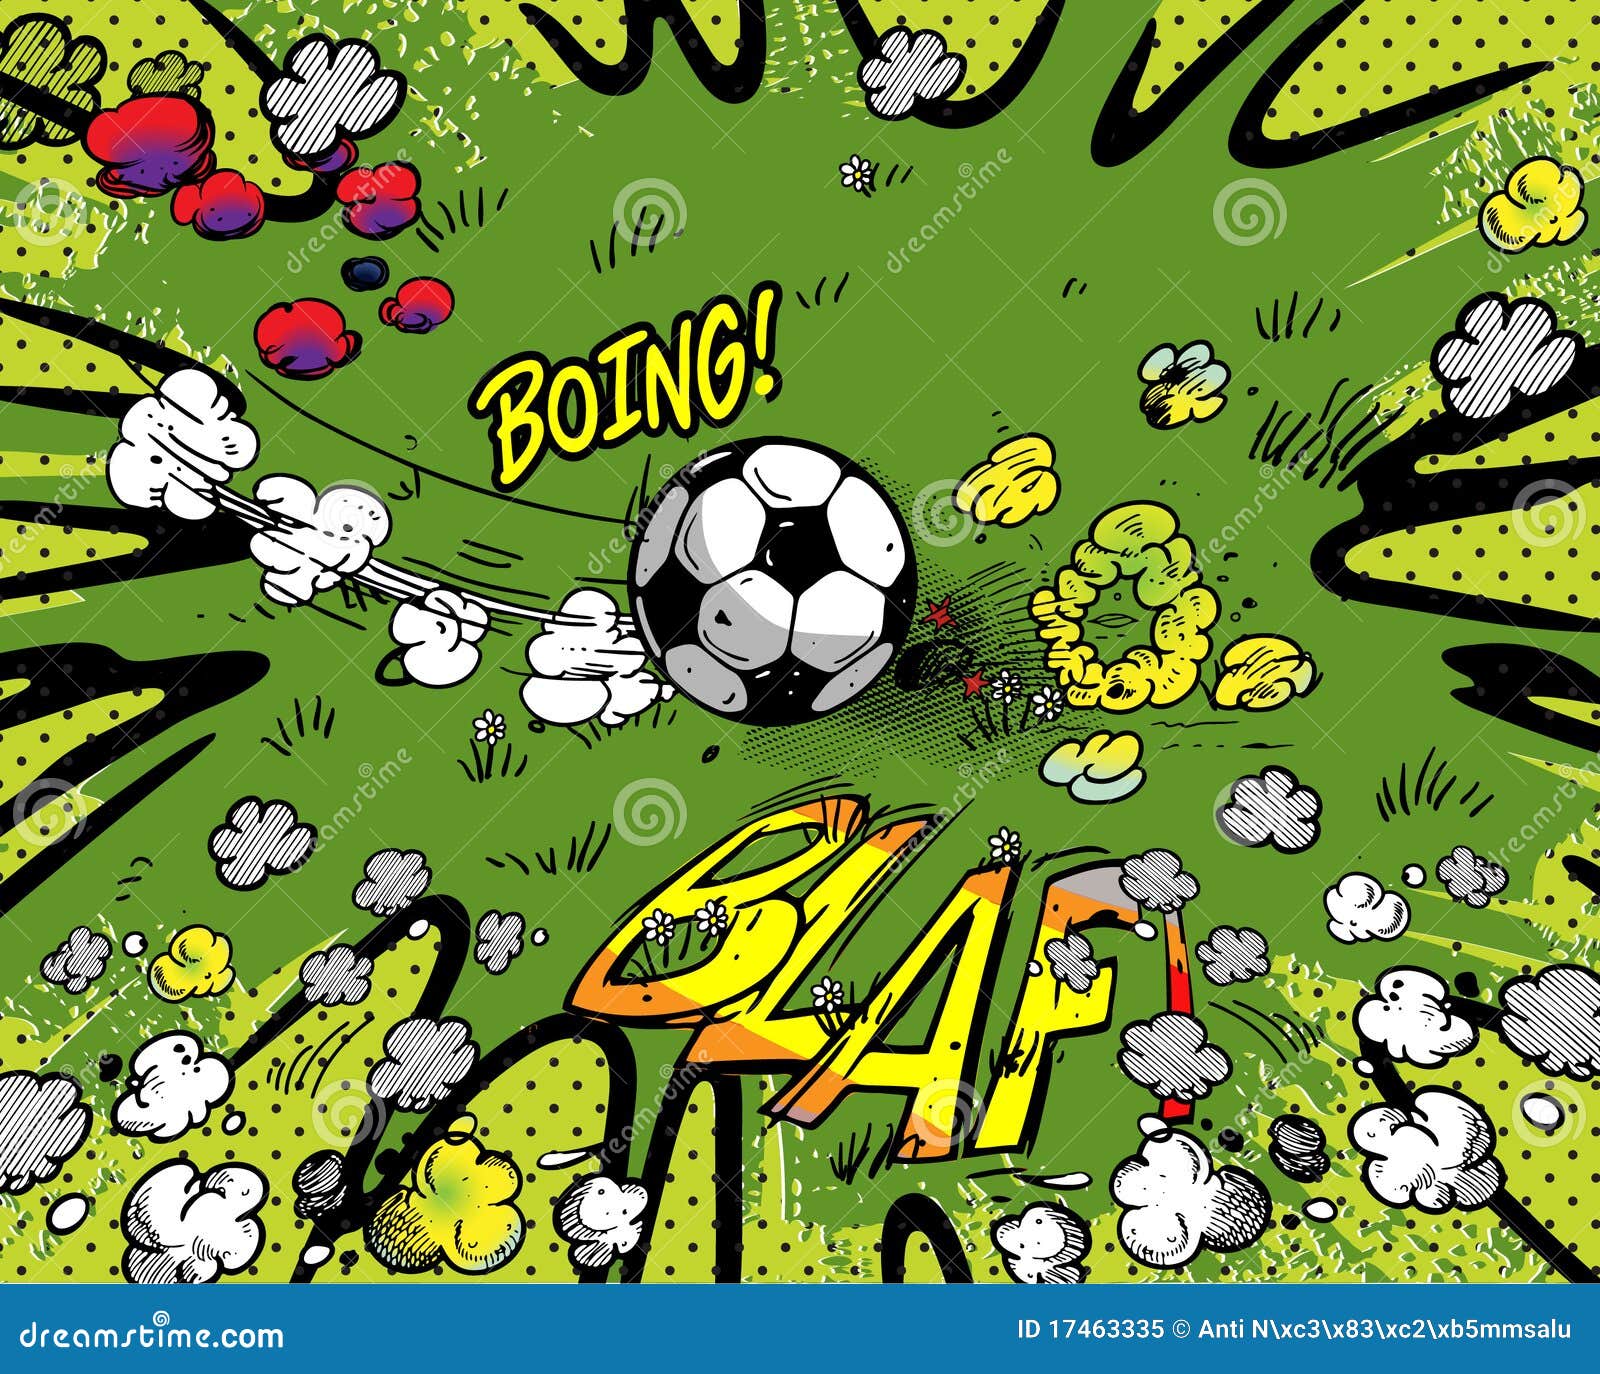 Soccer cartoon background stock vector. Illustration of football - 17463335